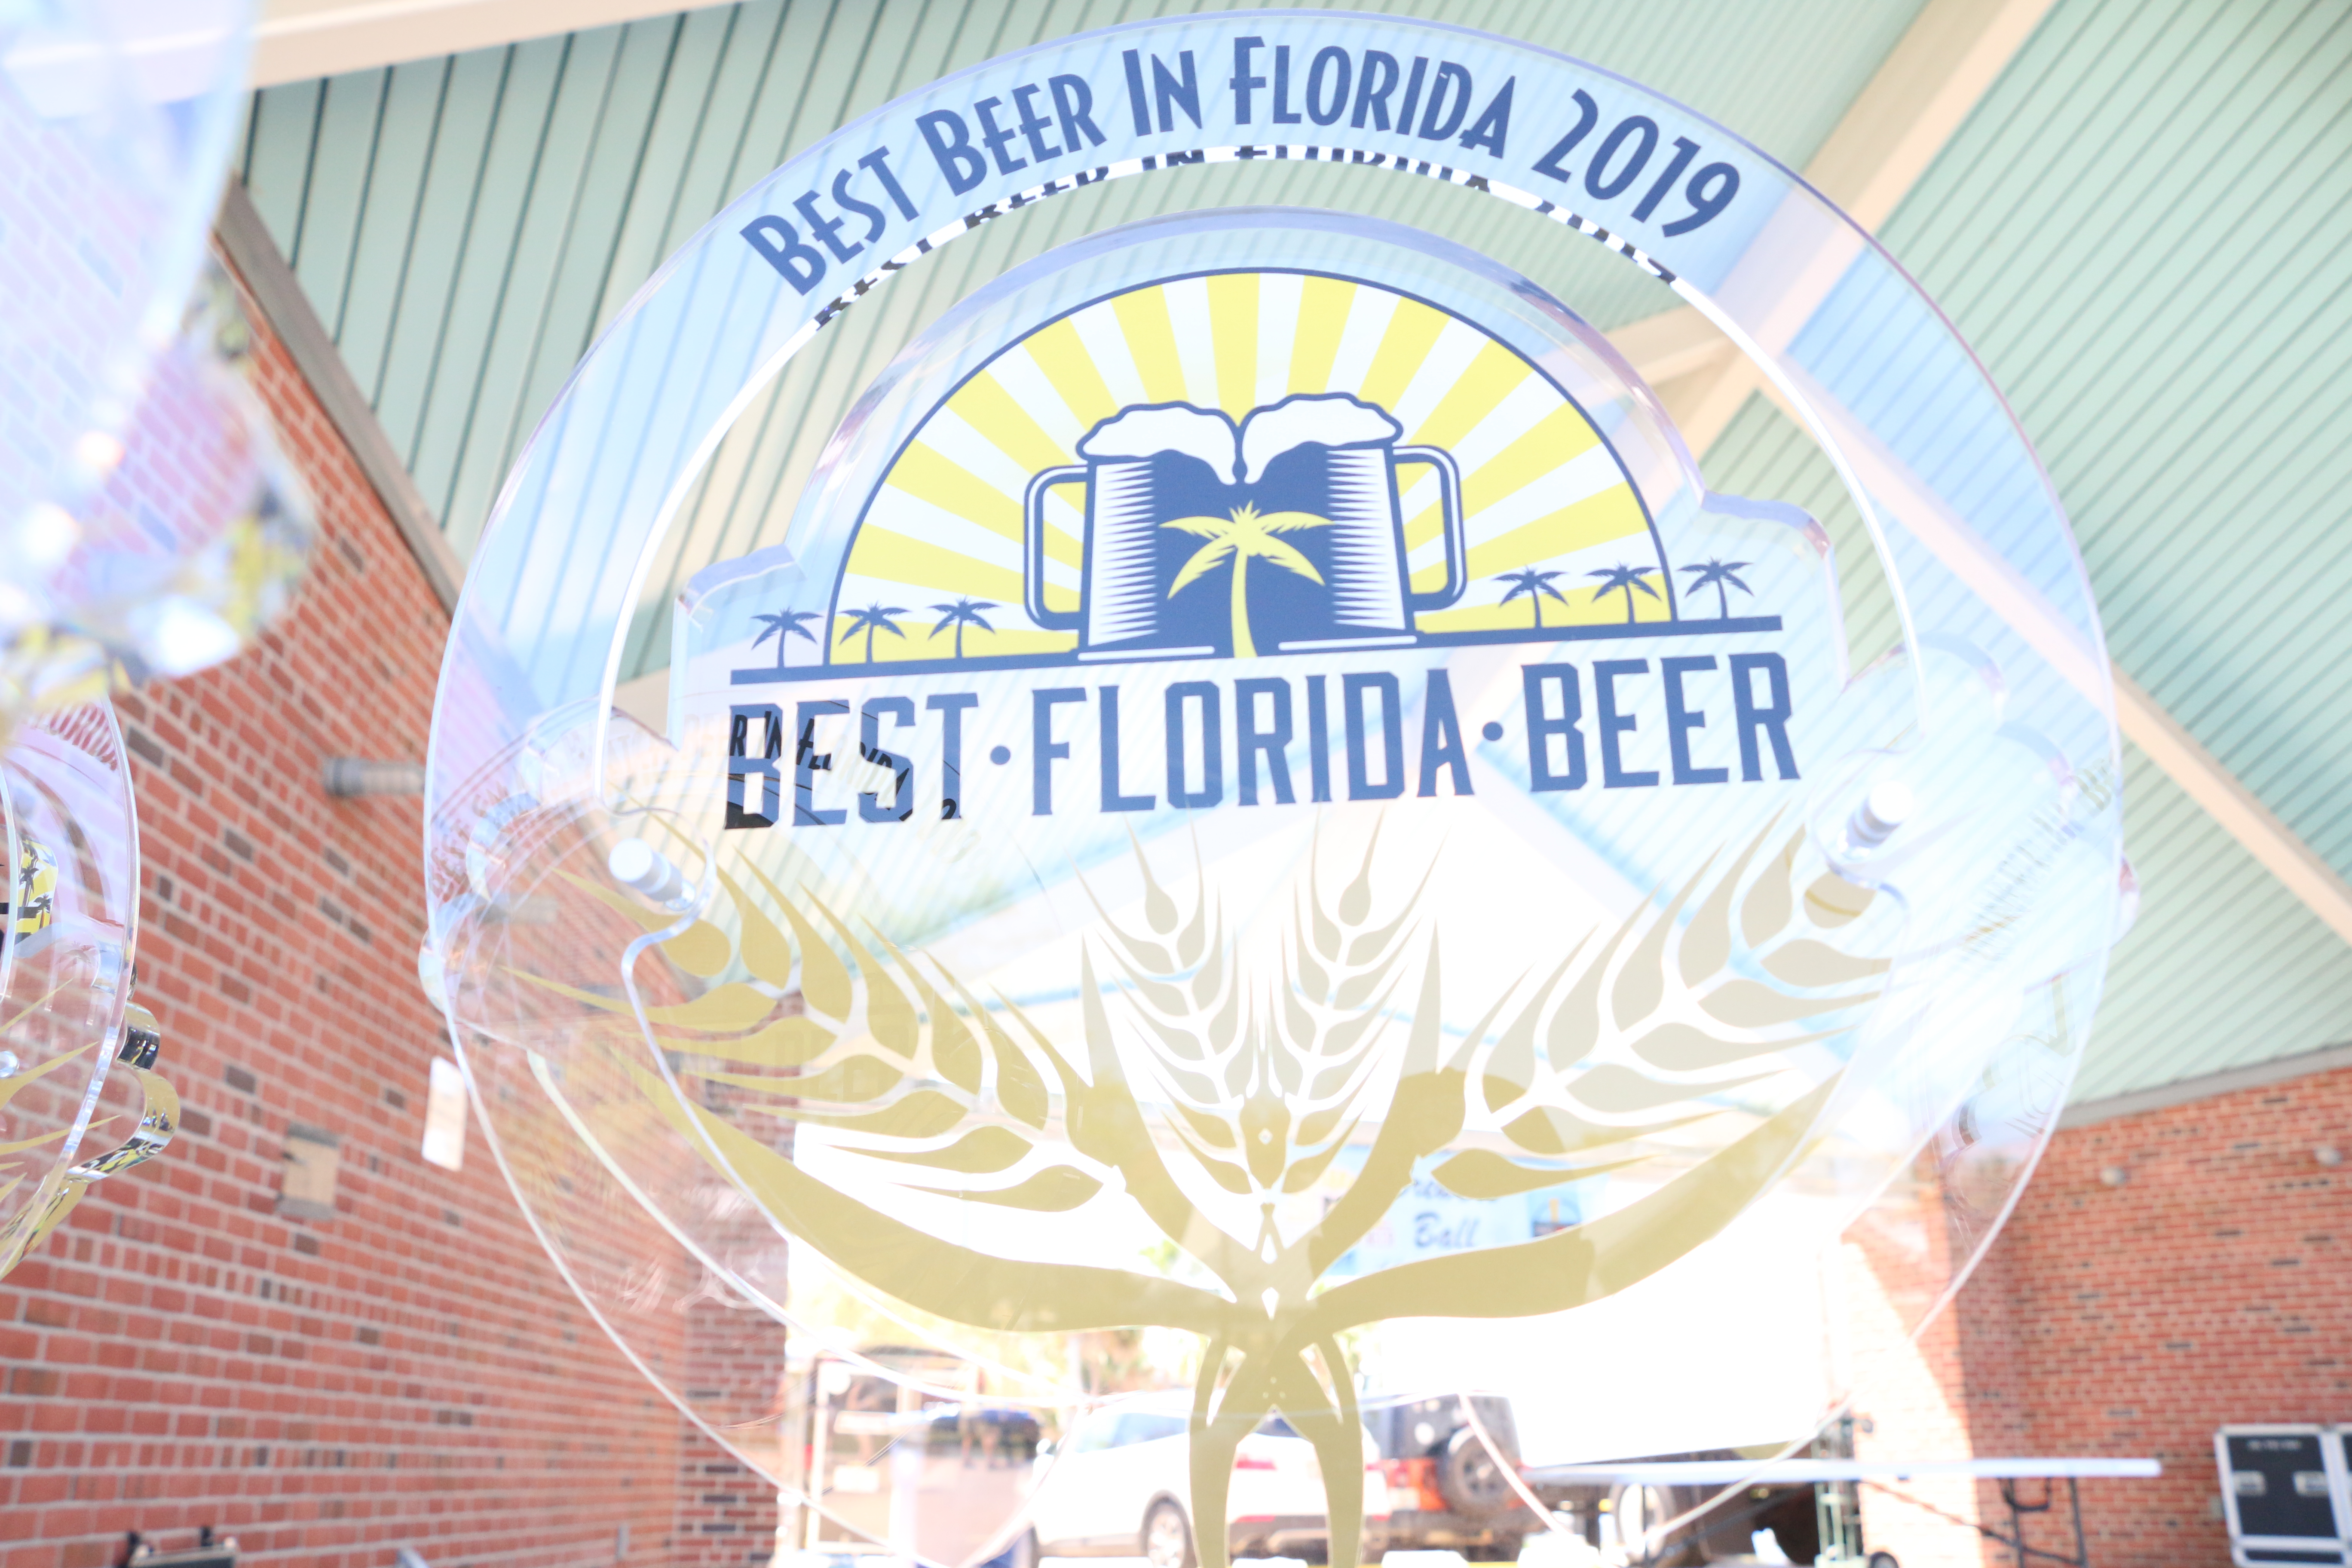 Best Florida Beer award Florida Beer NewsFlorida Beer News